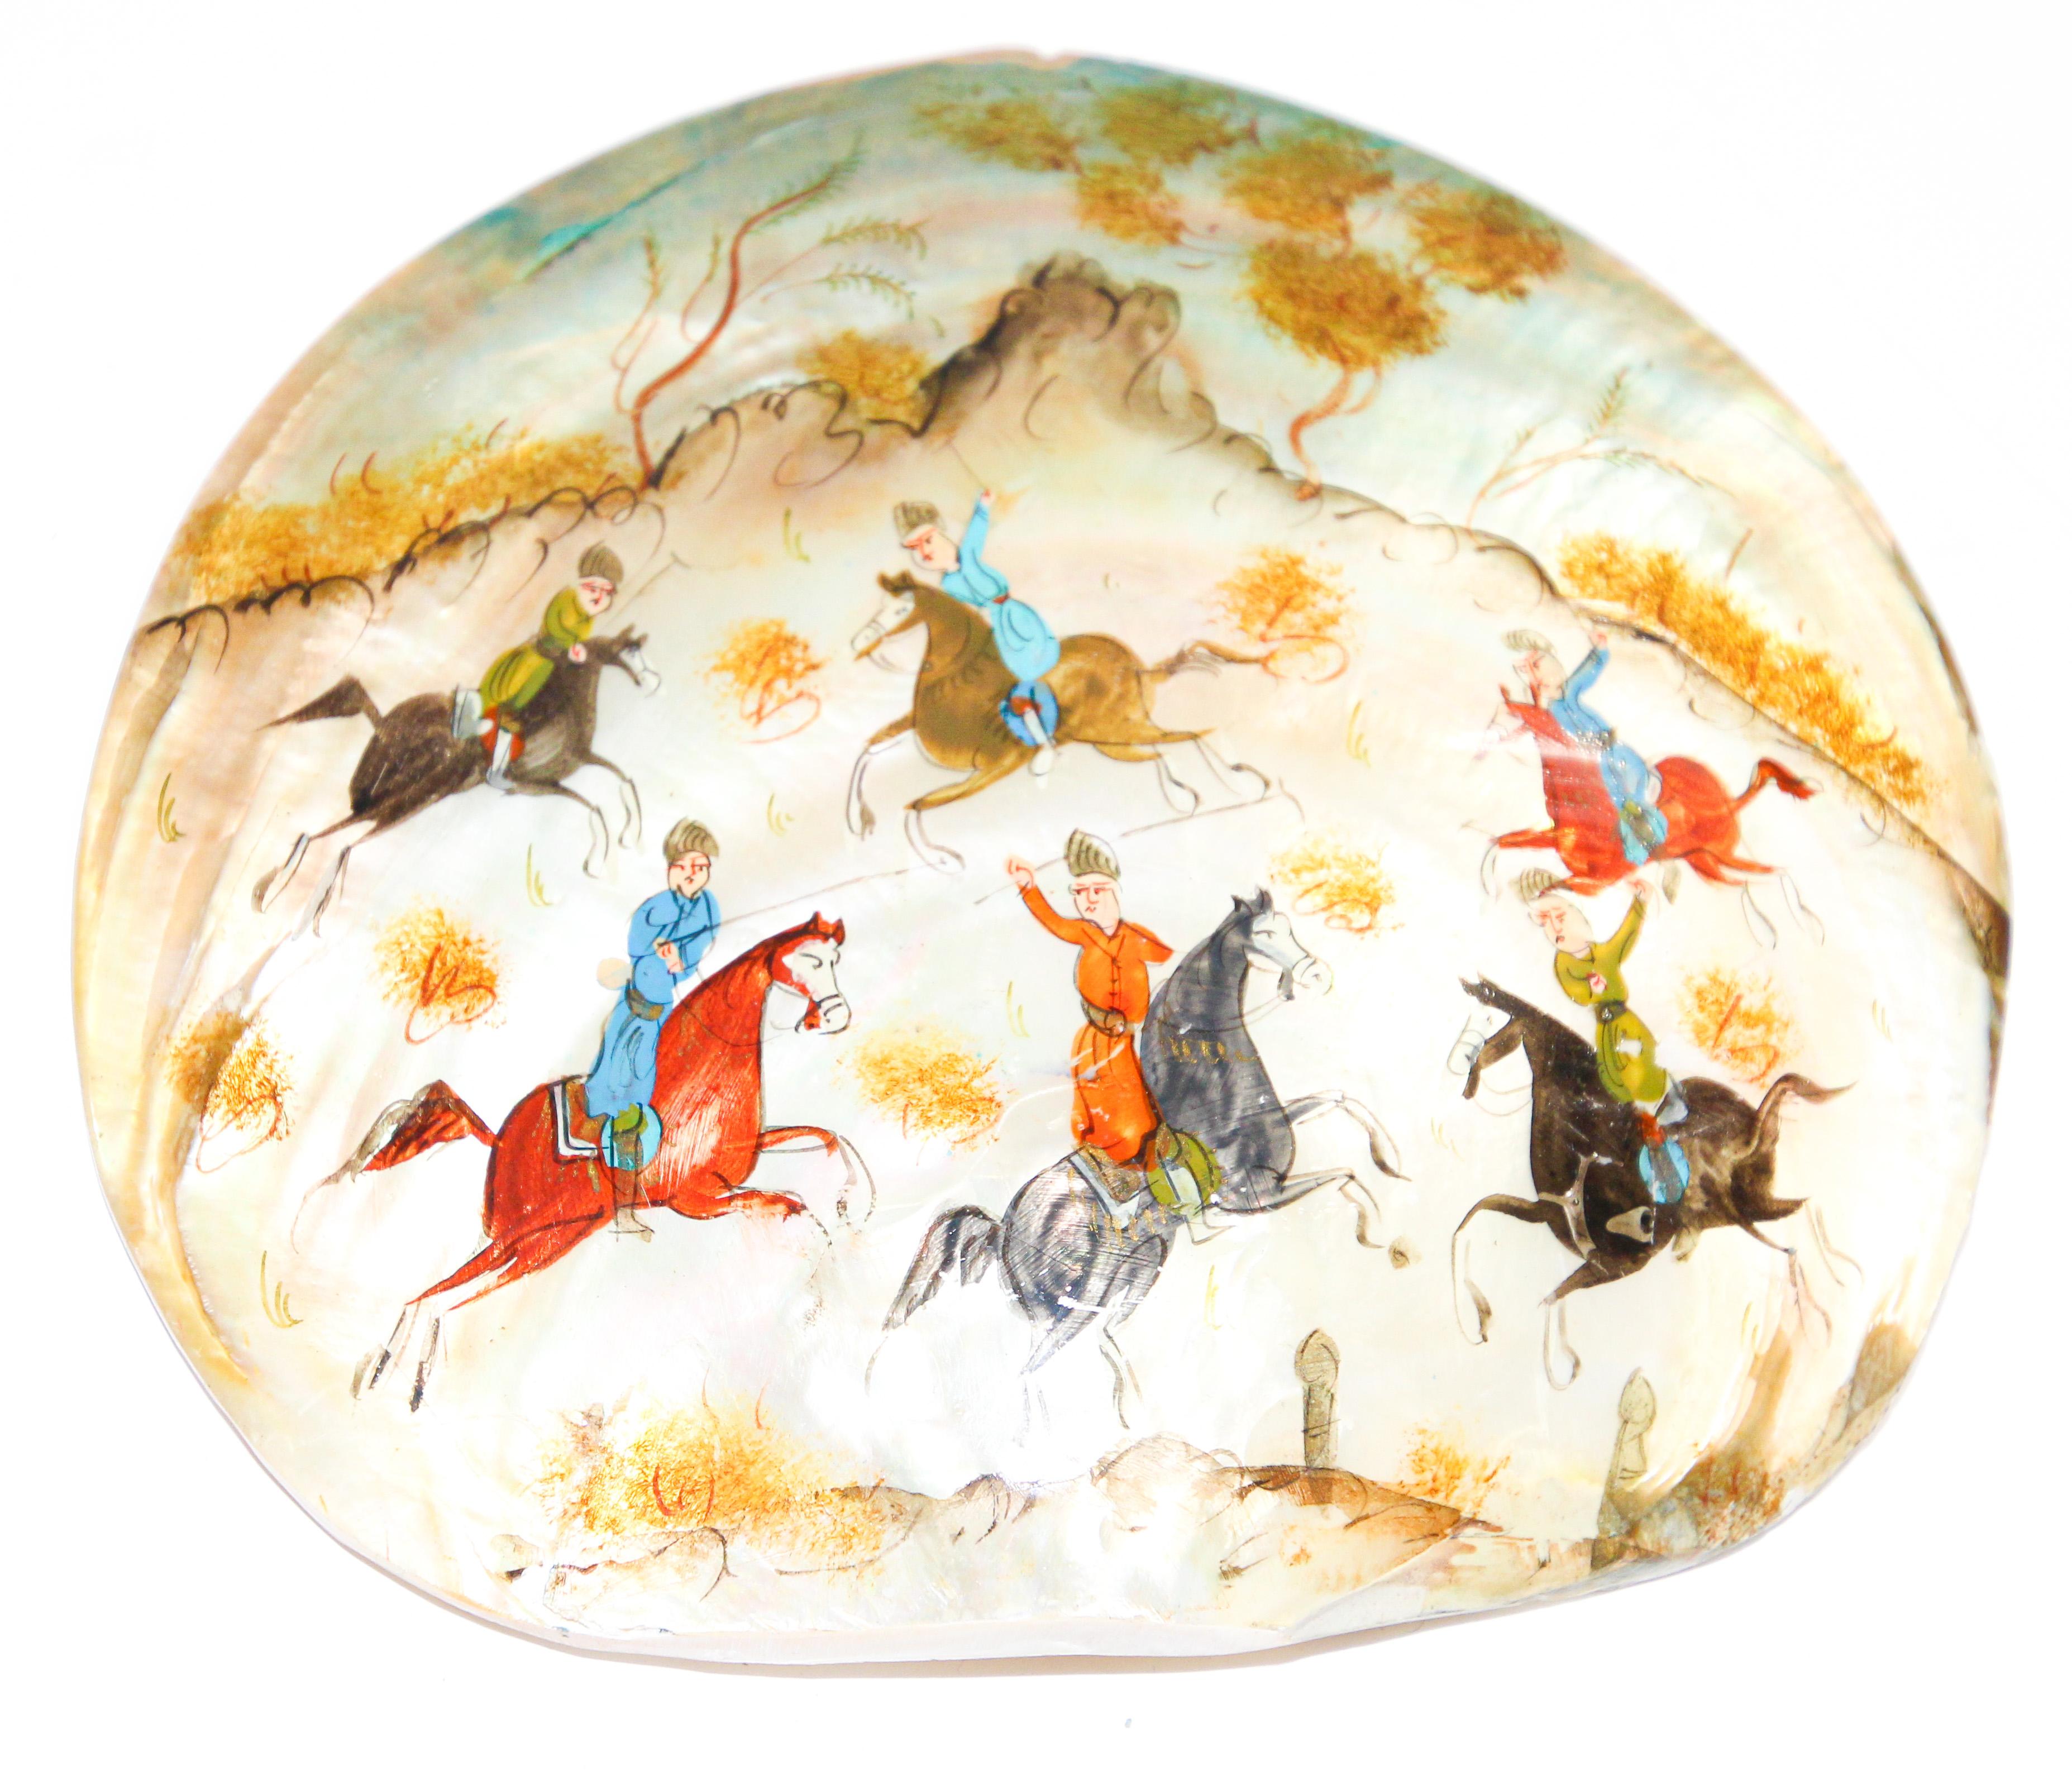 Handgemalte asiatische persische Miniaturmalerei auf einer Muschelschale.
Nahöstliche maurische Design-Miniaturmalerei auf Muschel, sehr feine und farbenfrohe Malerei von Männern auf Pferden beim Polospiel.
Persische Miniaturmalerei auf